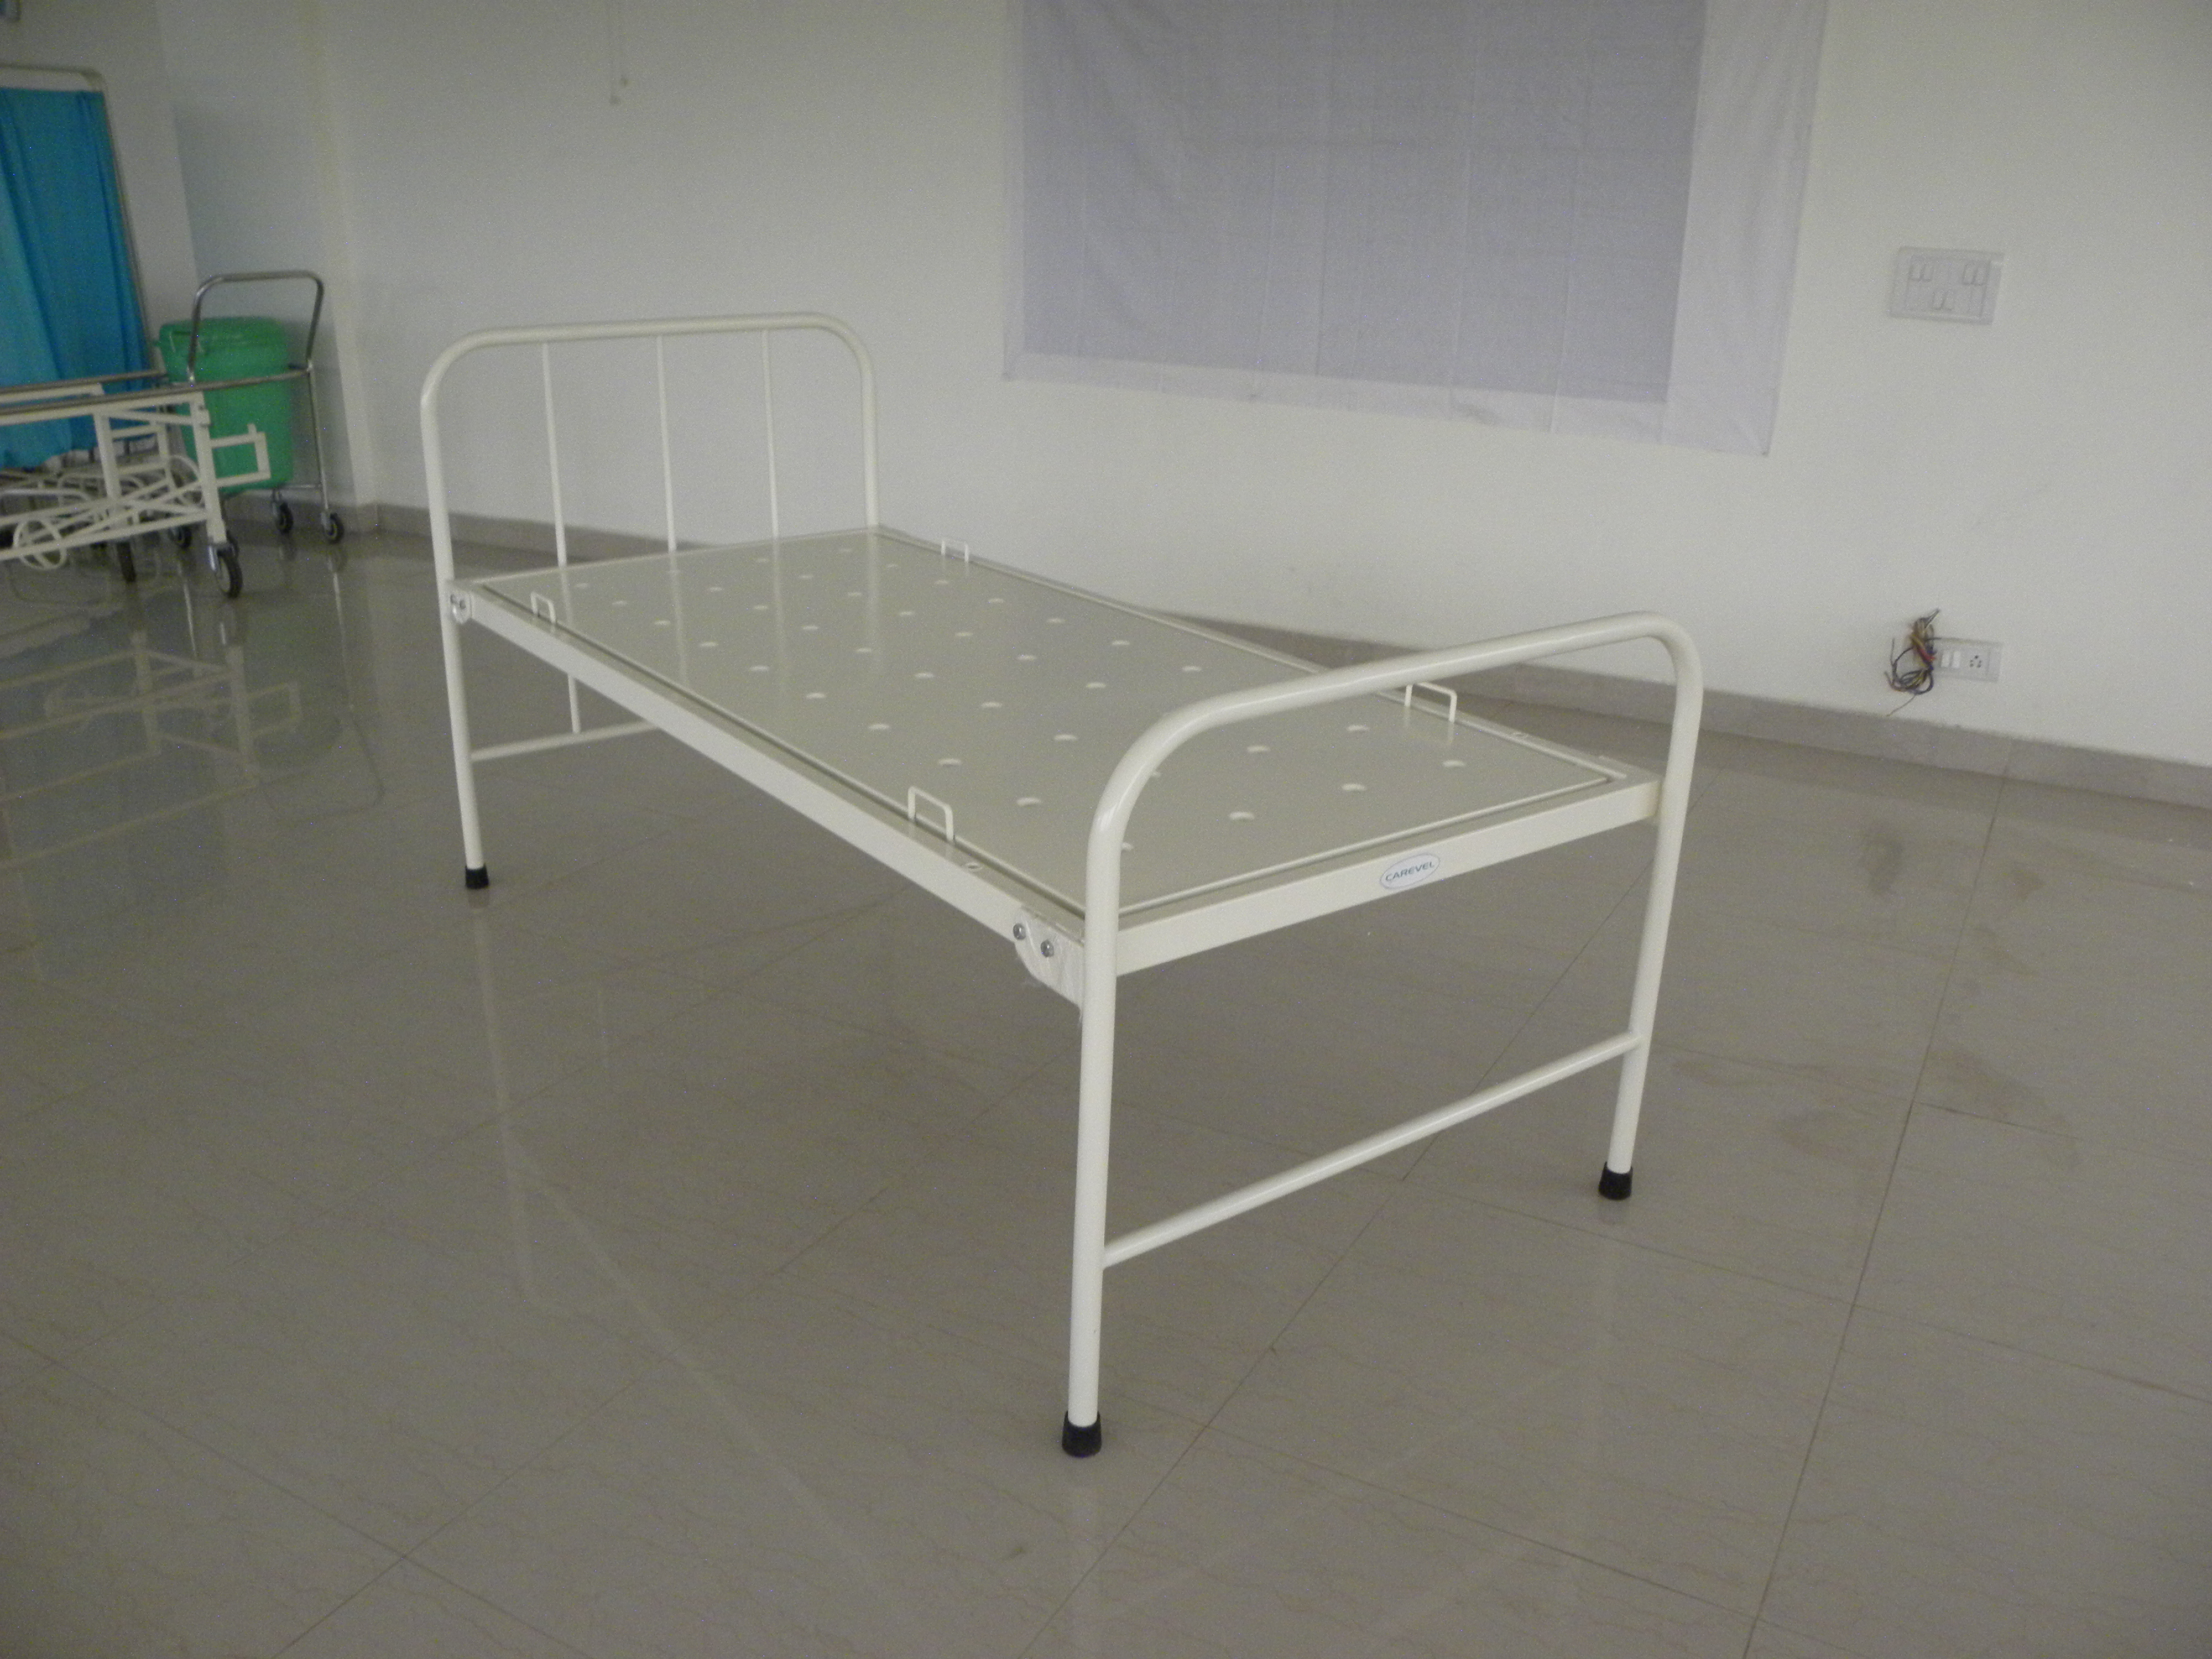 Hospital General Bed